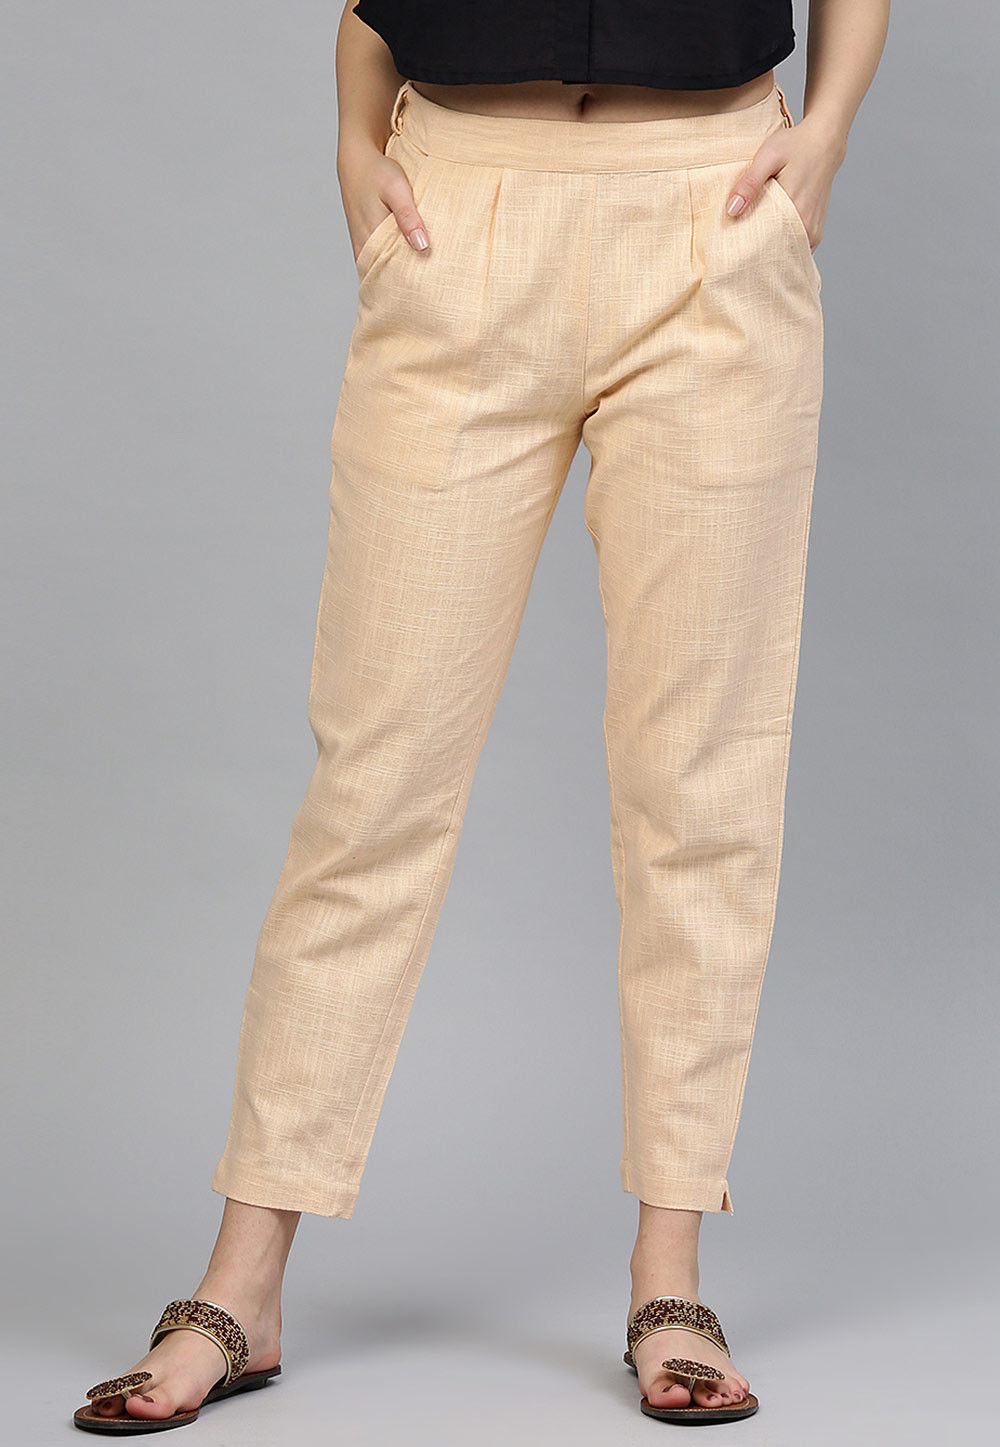 Beige Colour Cotton Pants For Men – Prime Porter